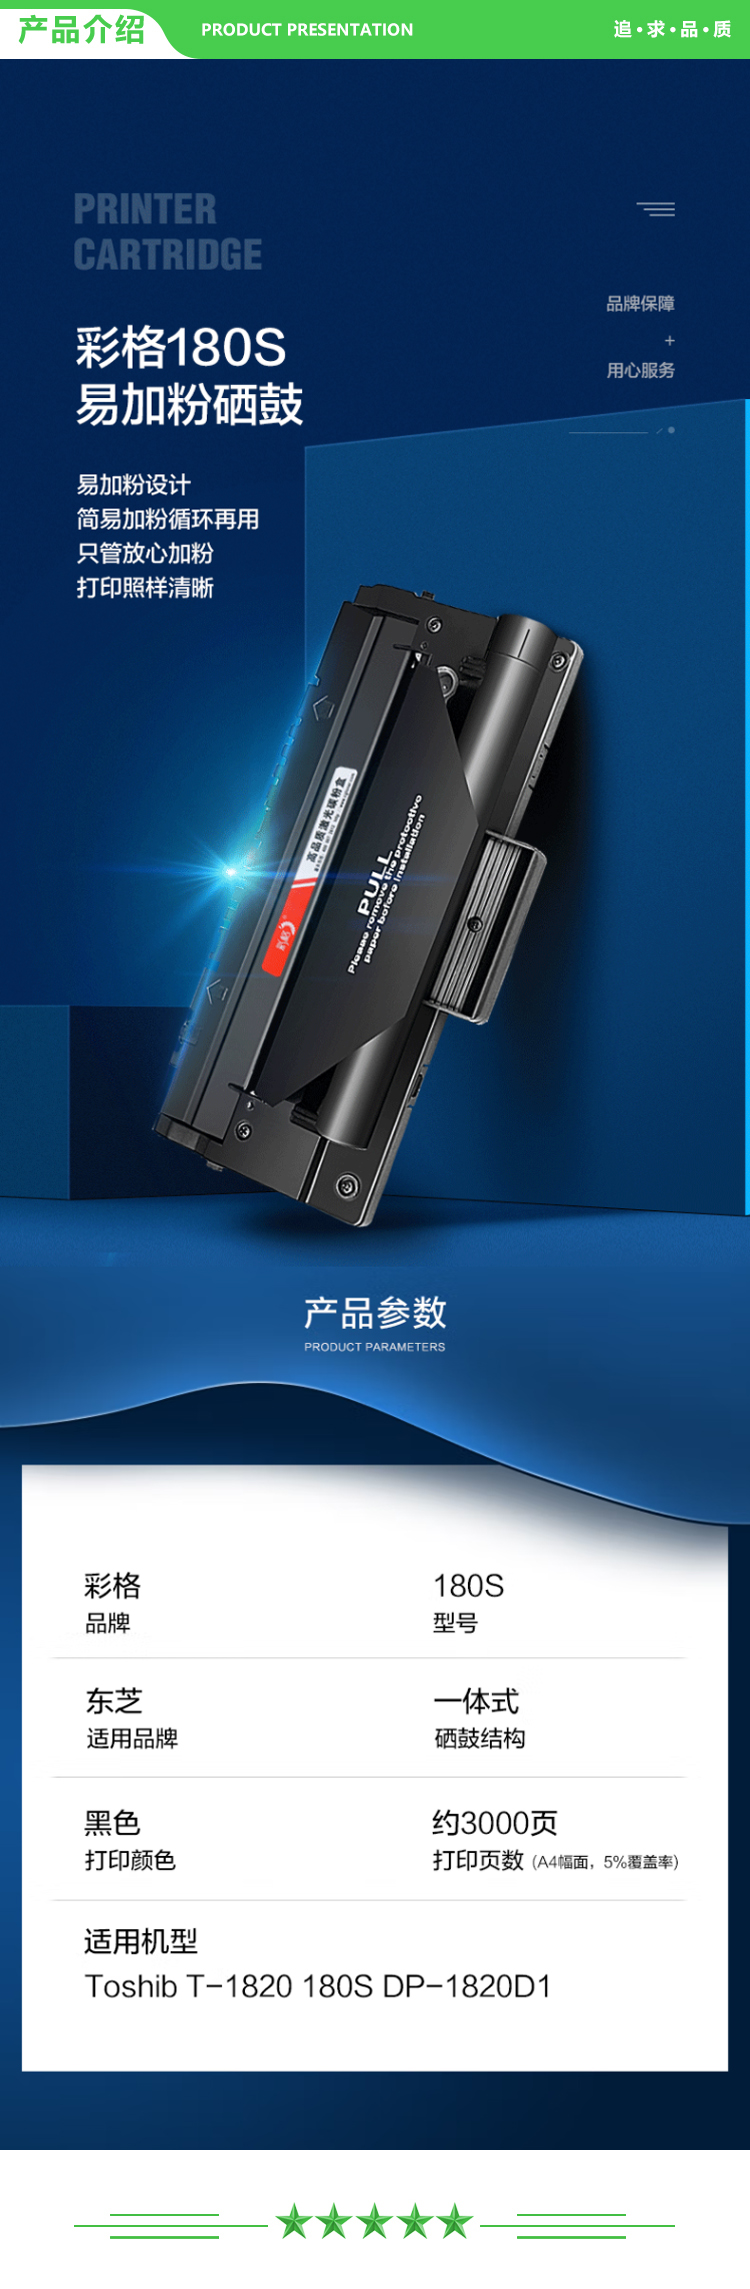 彩格 T-1820 黑色硒鼓-1支装 3000页 适用东芝180S墨盒Toshiba E-Studio 180S T-1820激光打印机复印机一体机1820D1 DP1820.jpg